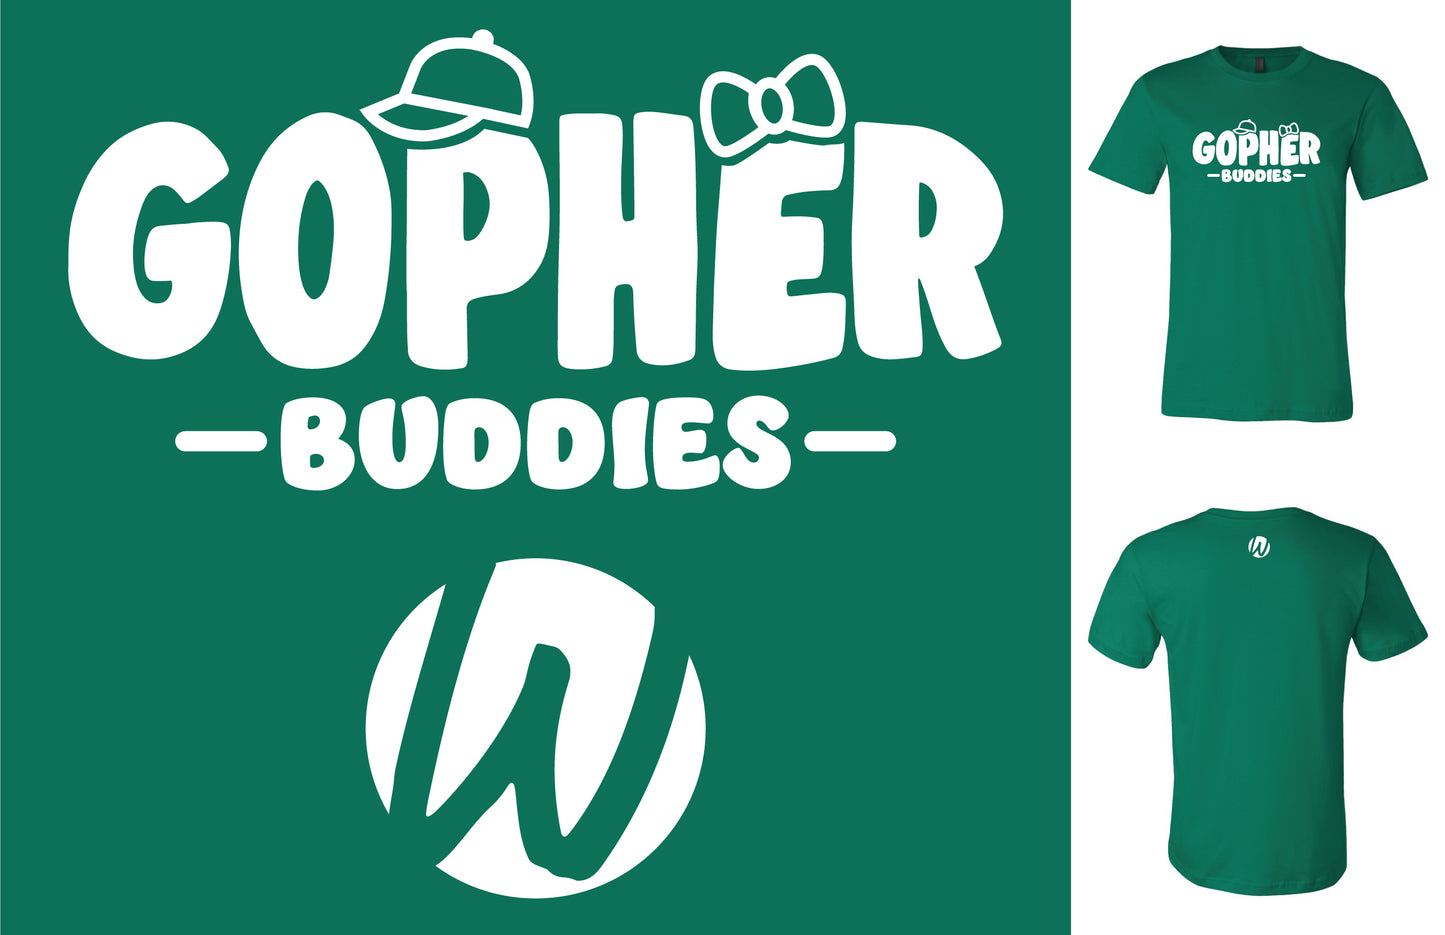 NEW Gopher Buddies children Shirts